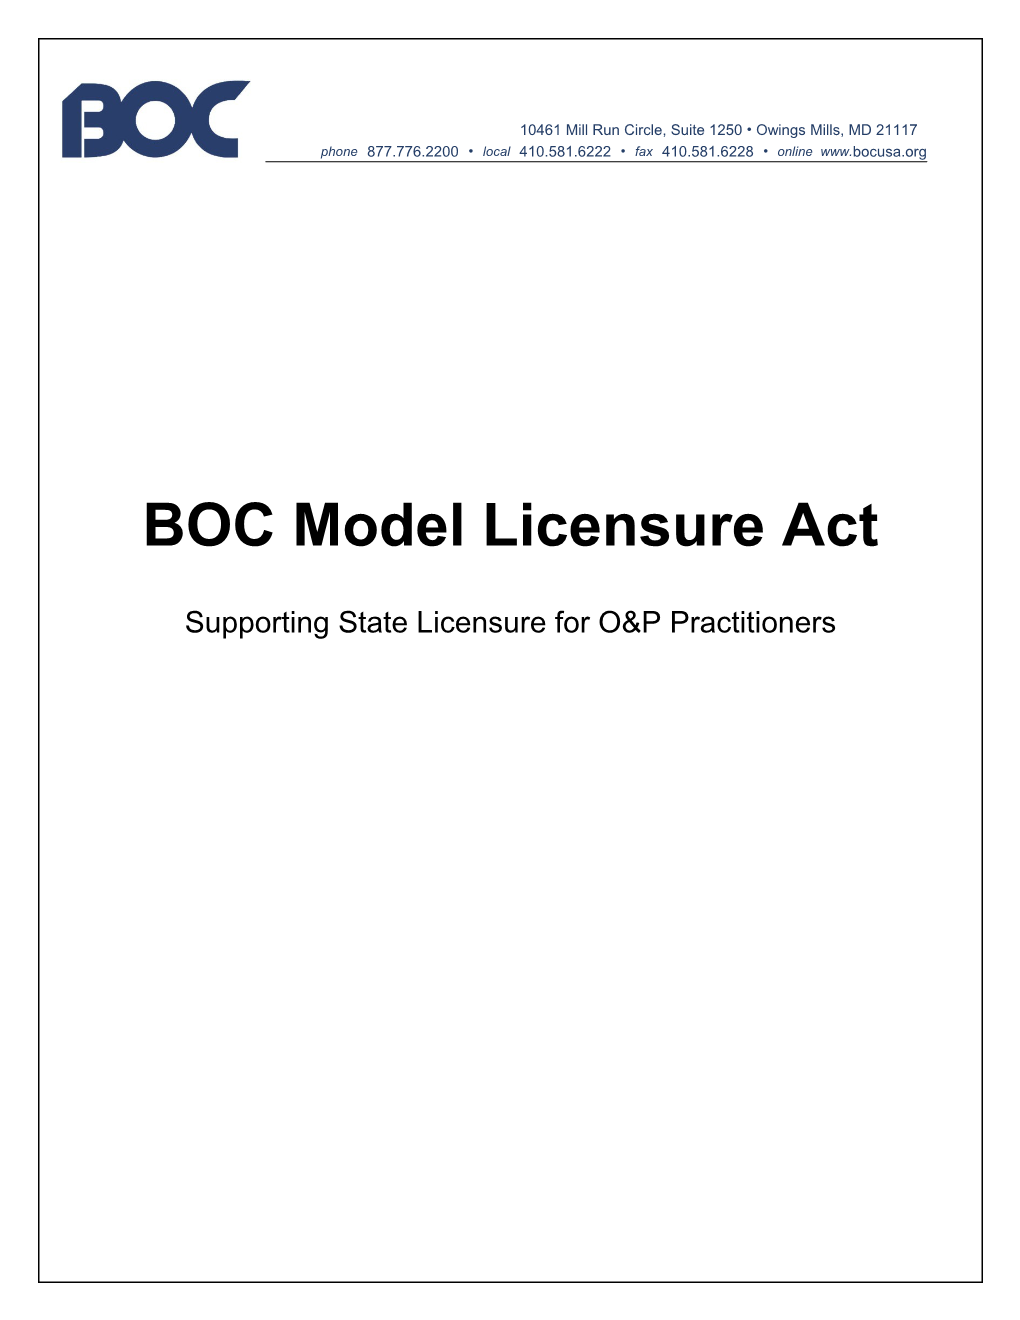 BOC Model Licensure Act